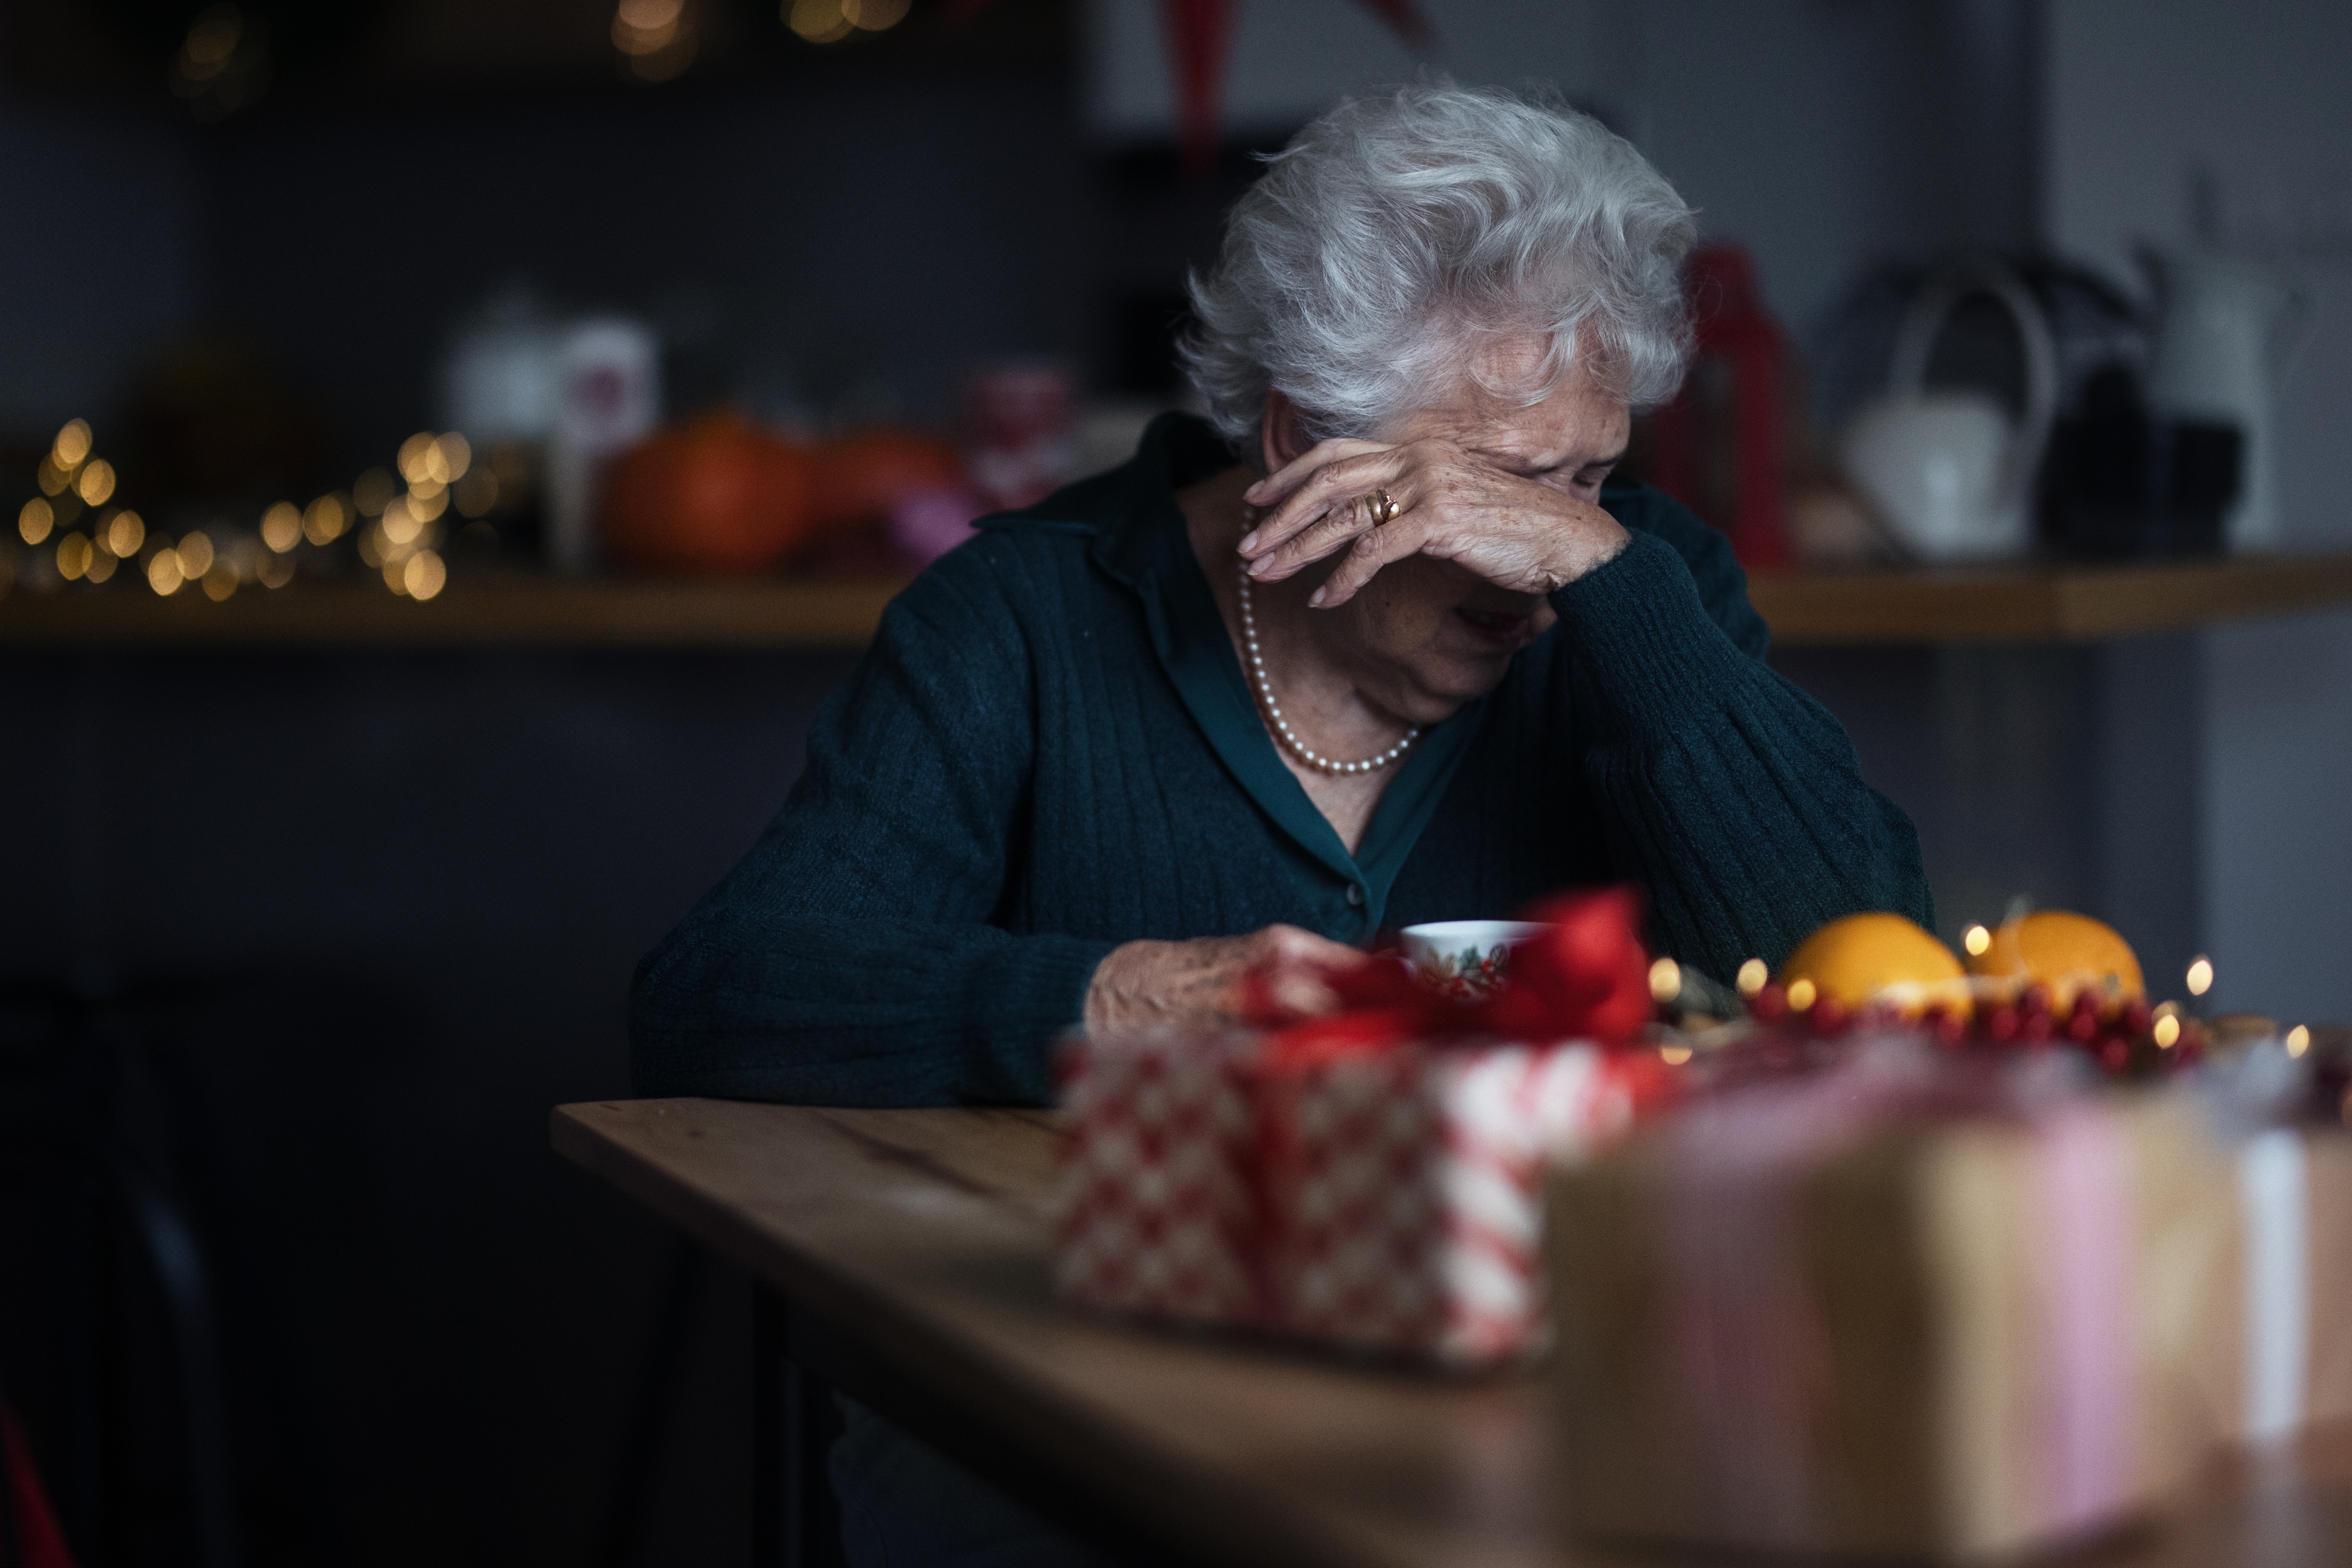 Eine unglückliche ältere Frau, die alleine sitzt und weint | Quelle: Shutterstock